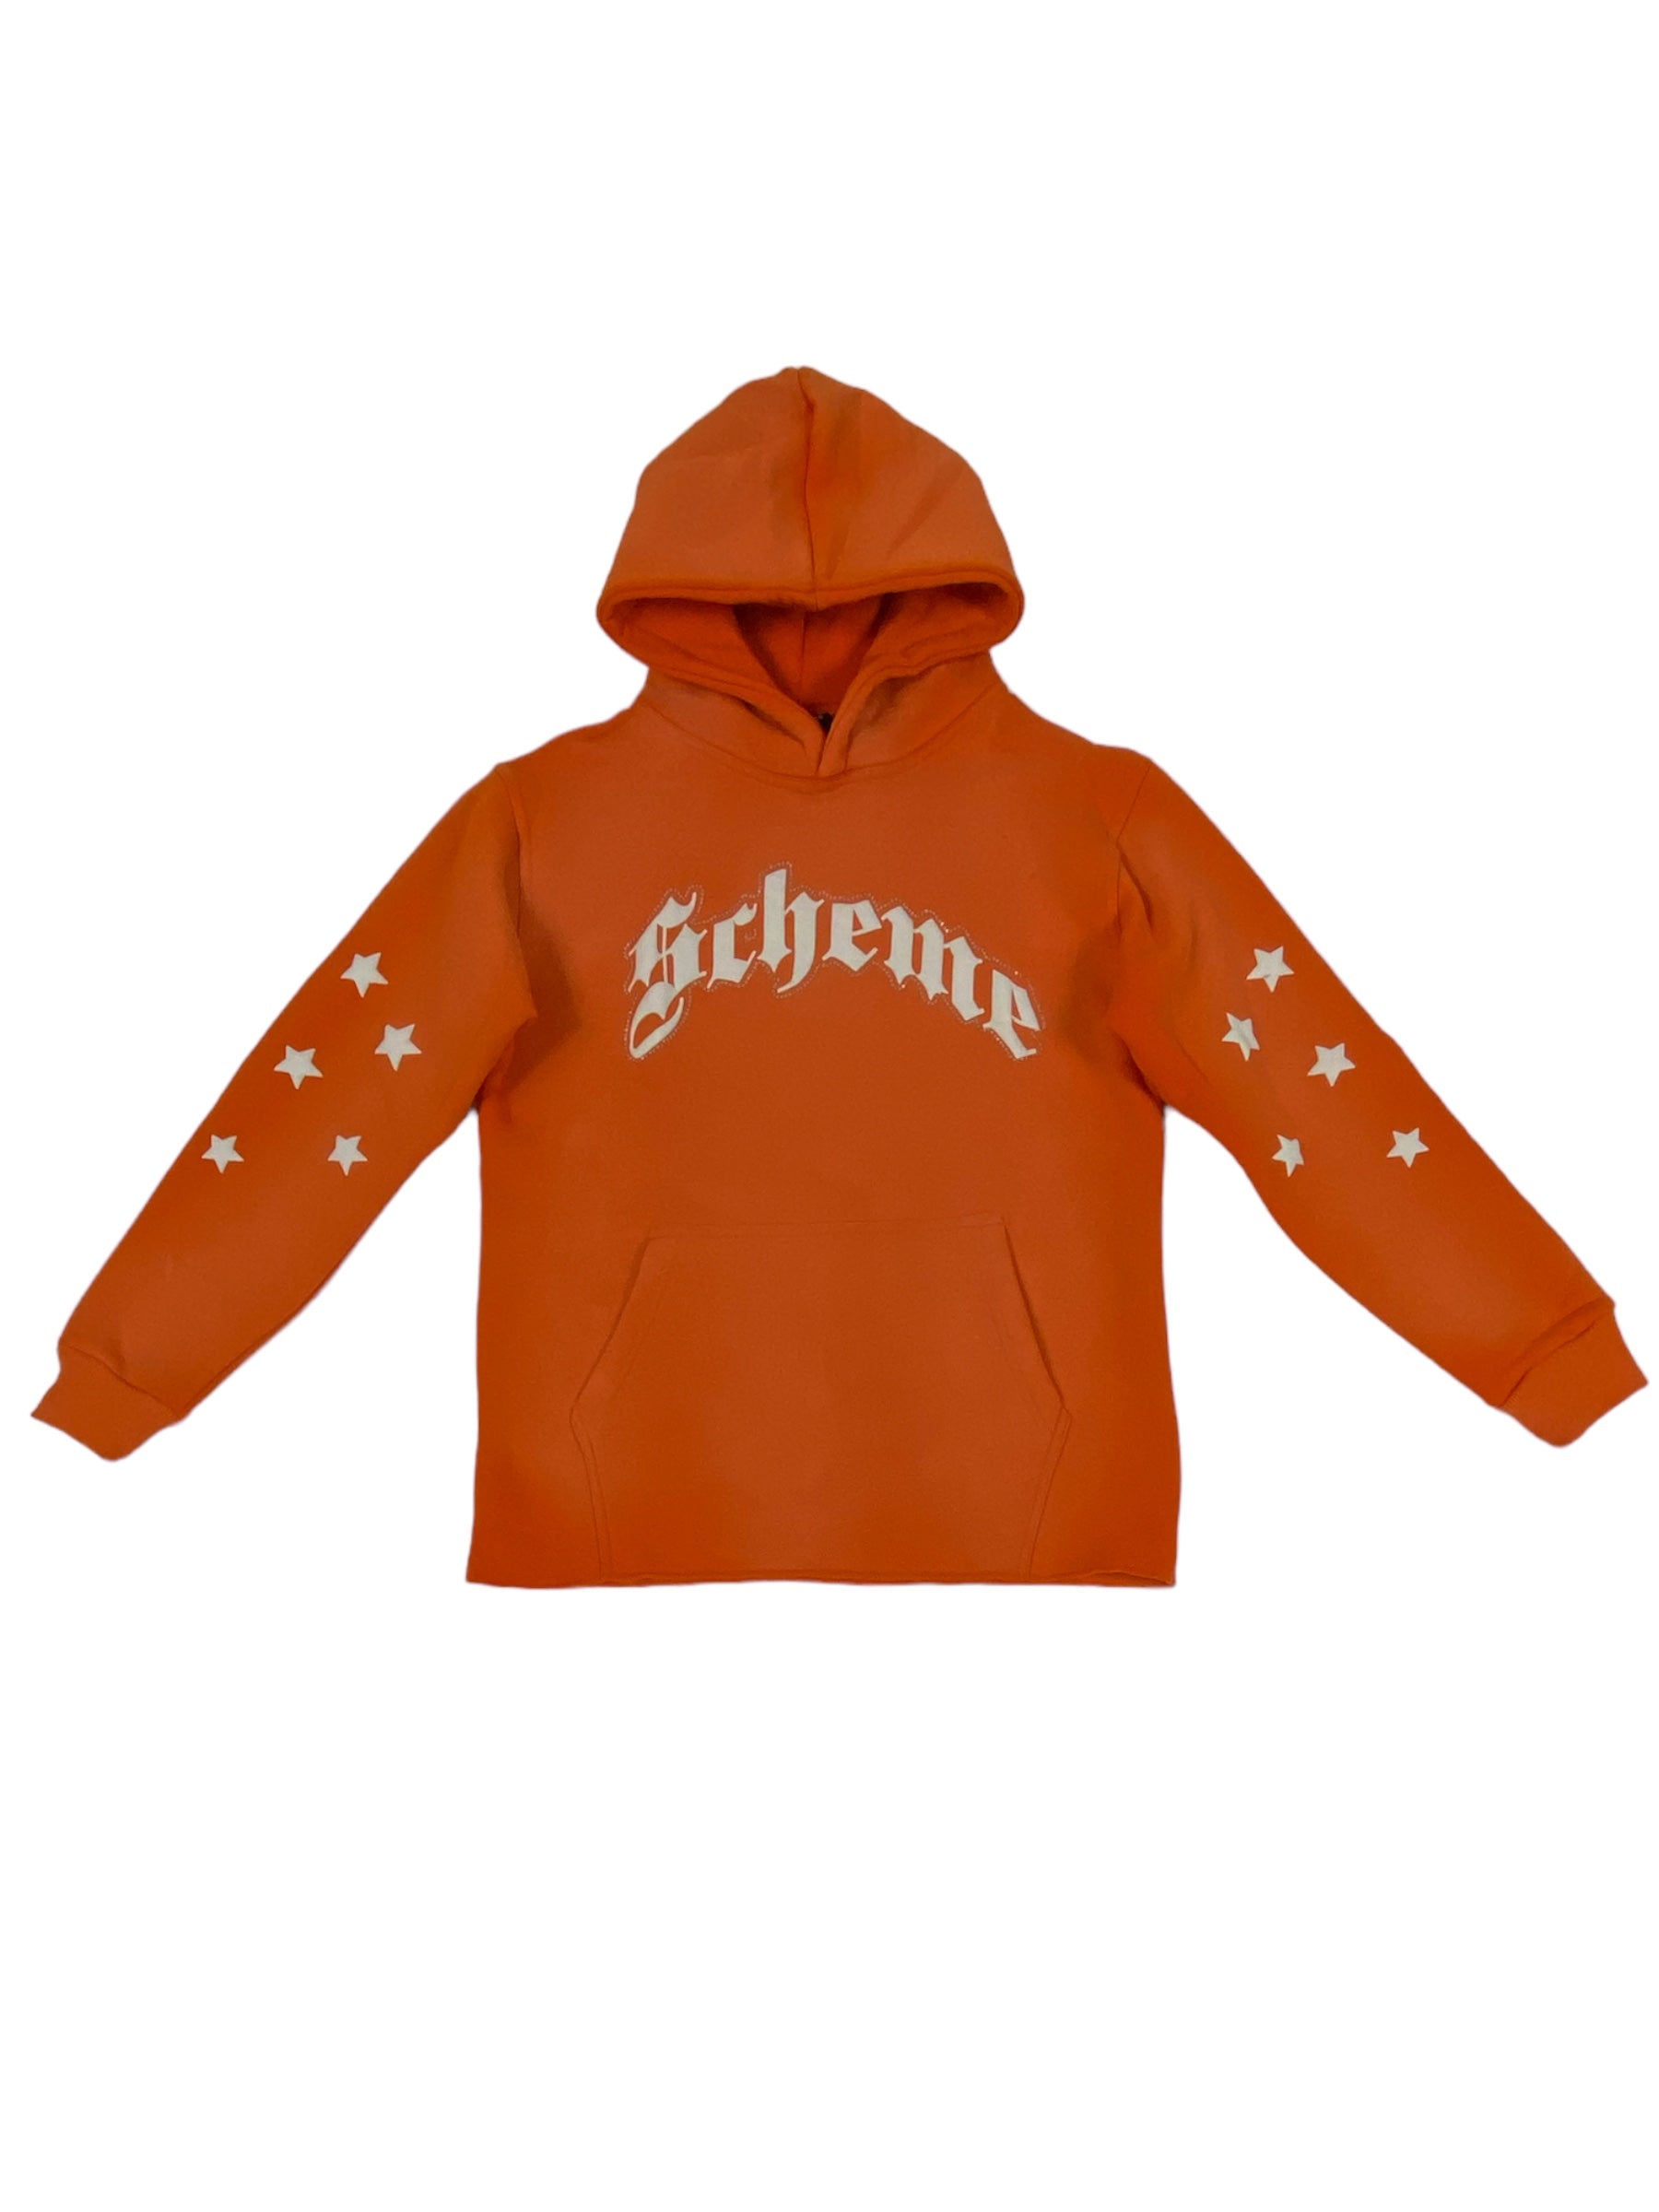 "Scheme" Rhinestone Star Puff - Washed Orange Hoodie - Scheme Wear